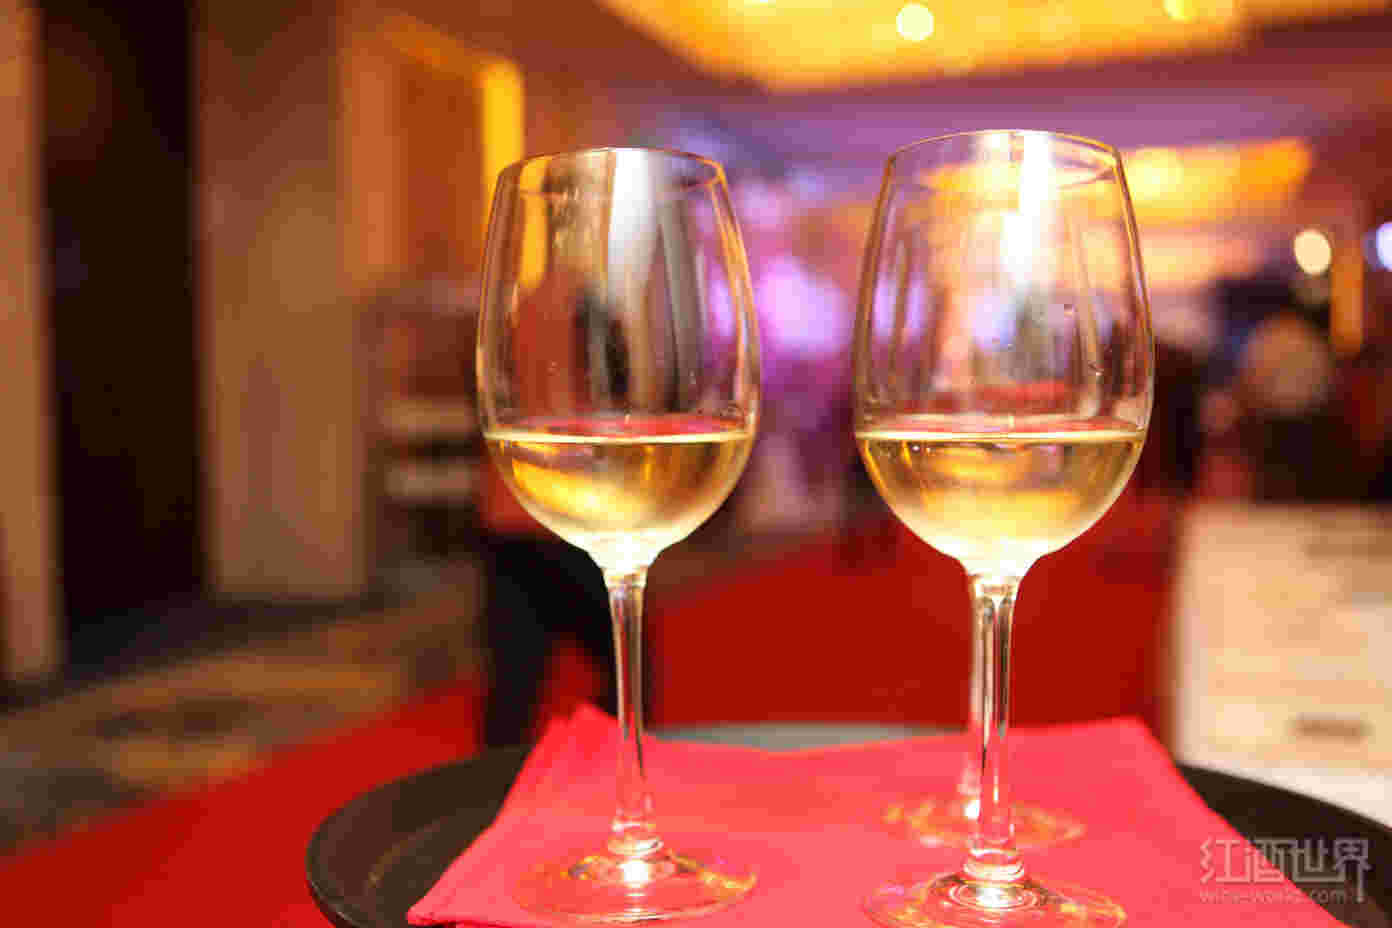 中国葡萄酒进口增长趋势将持续